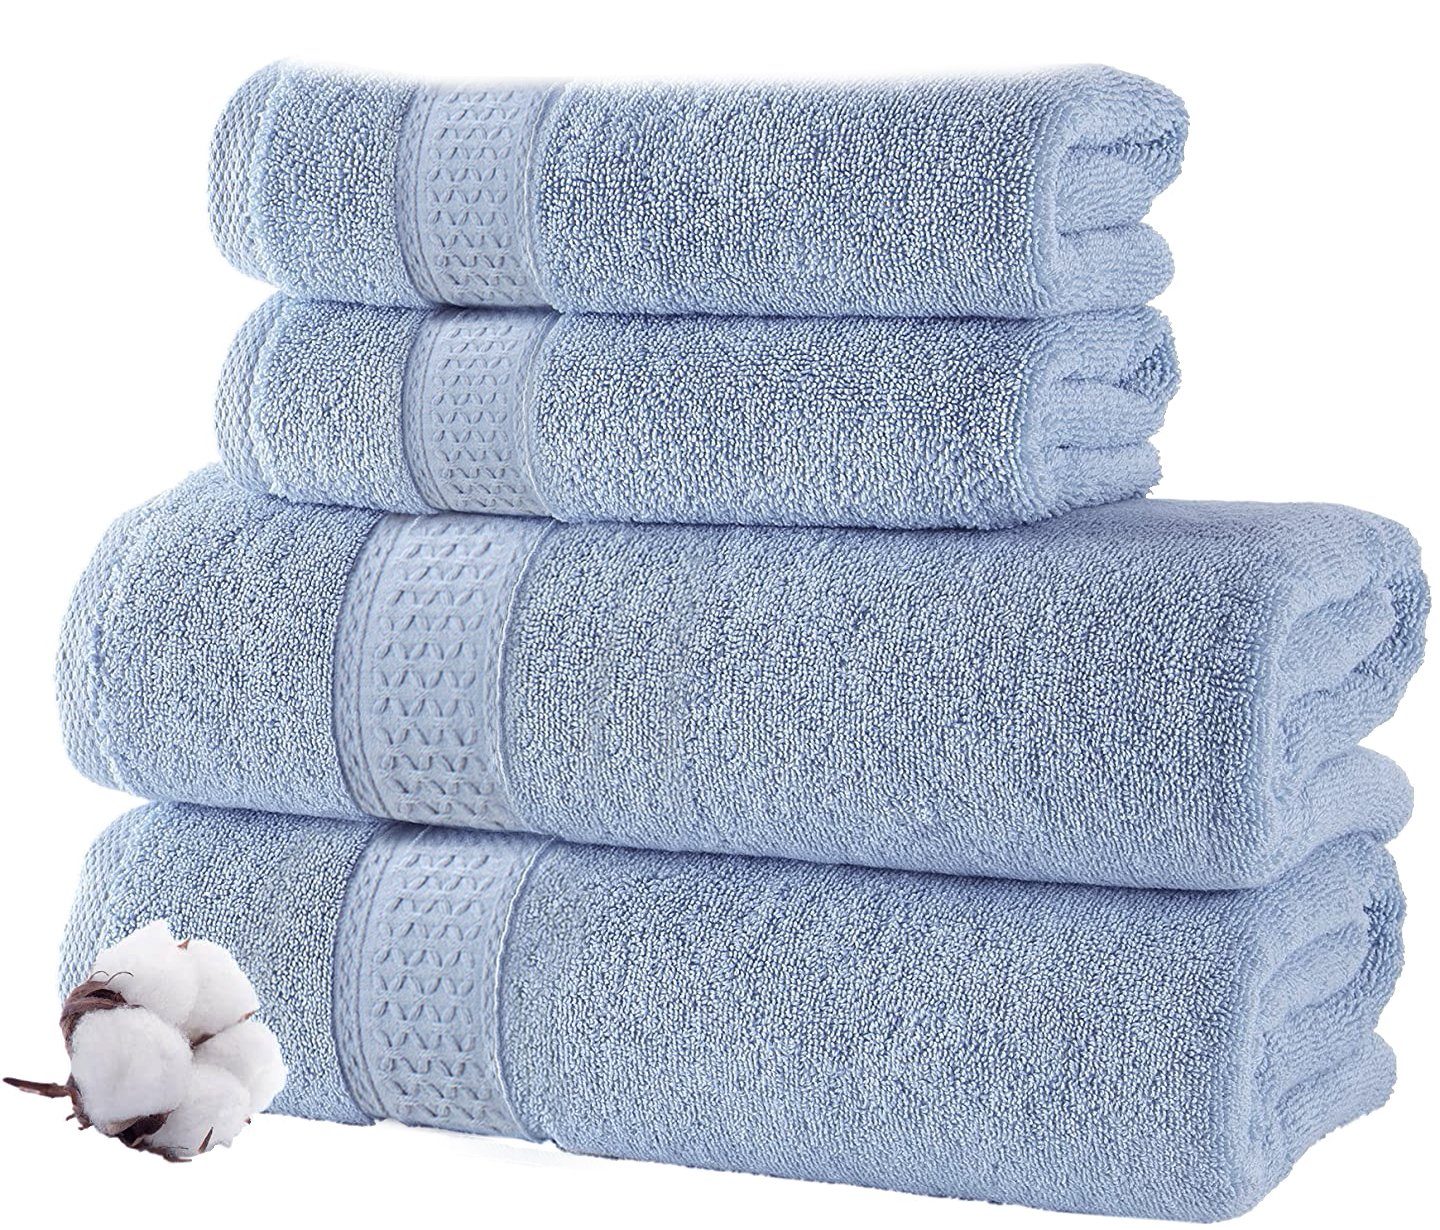 Vaxiuja Handtuch Set Badetuch aus reiner Baumwolle, absorbierendes  Badetuch, weich, quadratisch, gekämmt,2 Handtücher, 2 Waschlappen